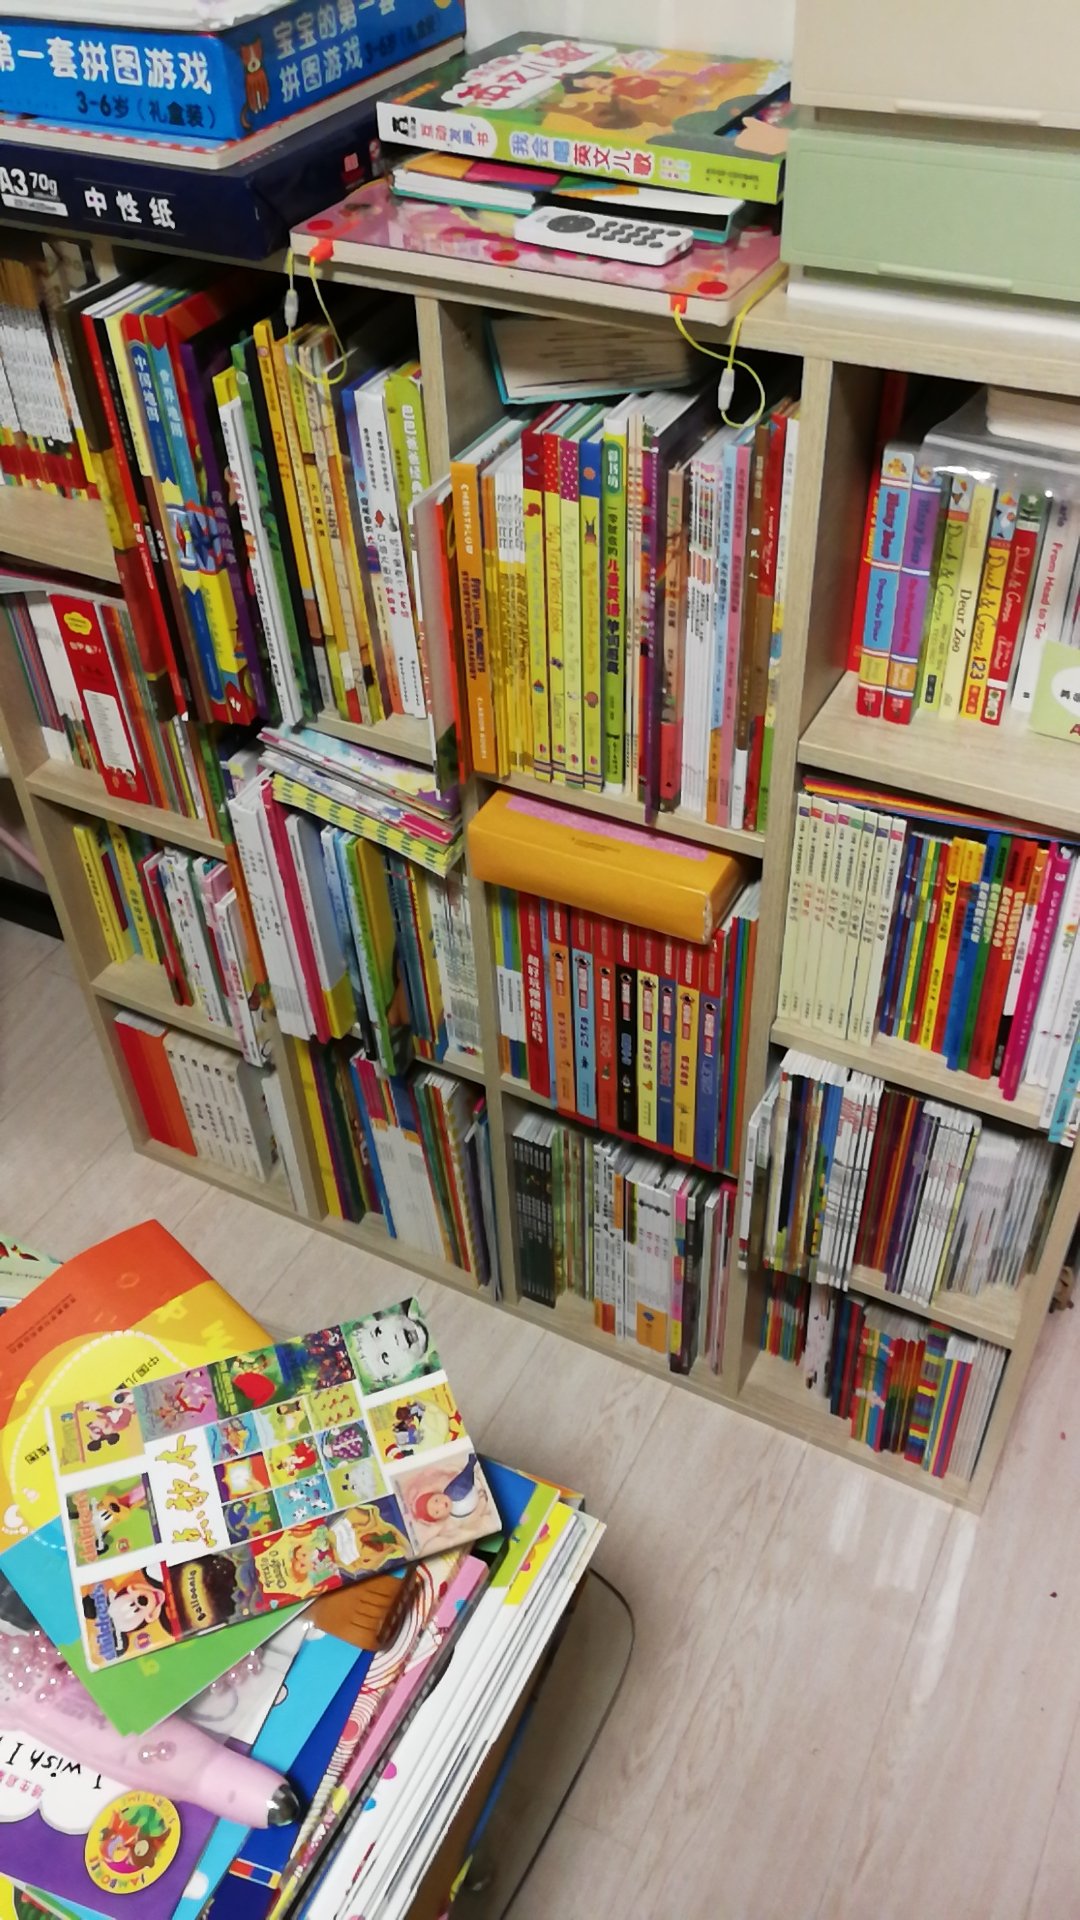 最关注的就是的图书，儿童图书。赶上活动必买。现在马上就要再换个书架了。